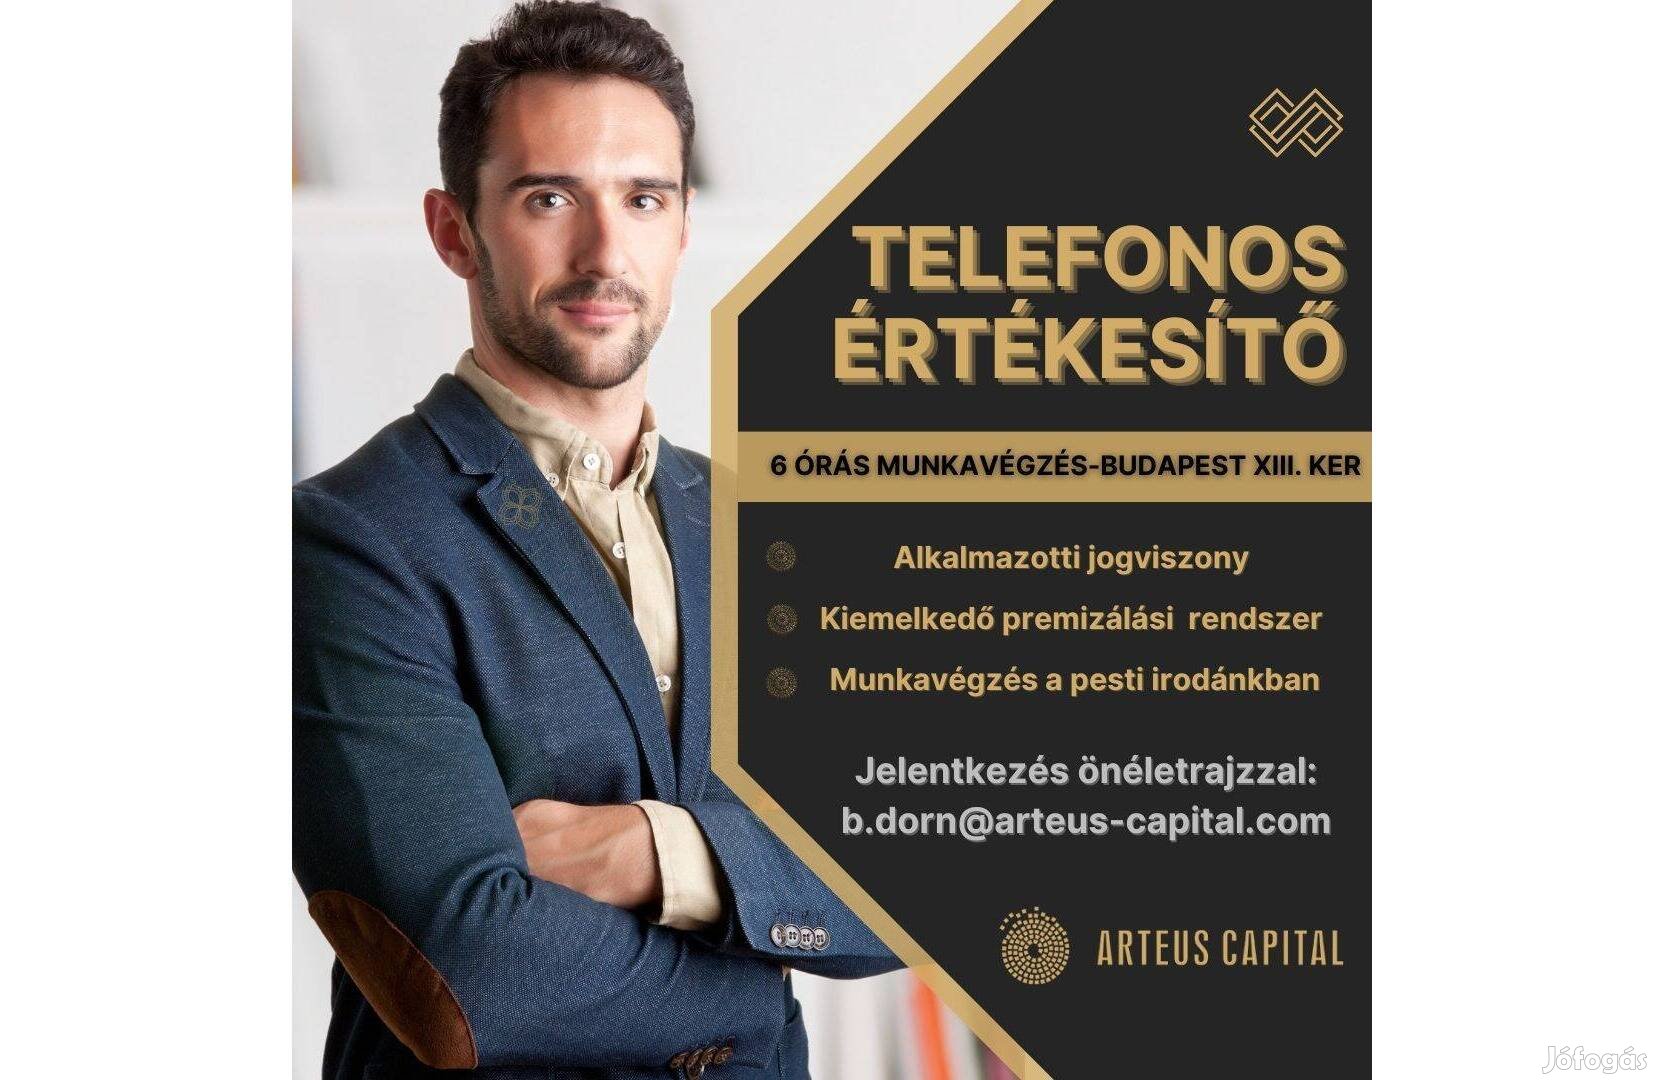 Arteus Capital-Telefonos értékesítő